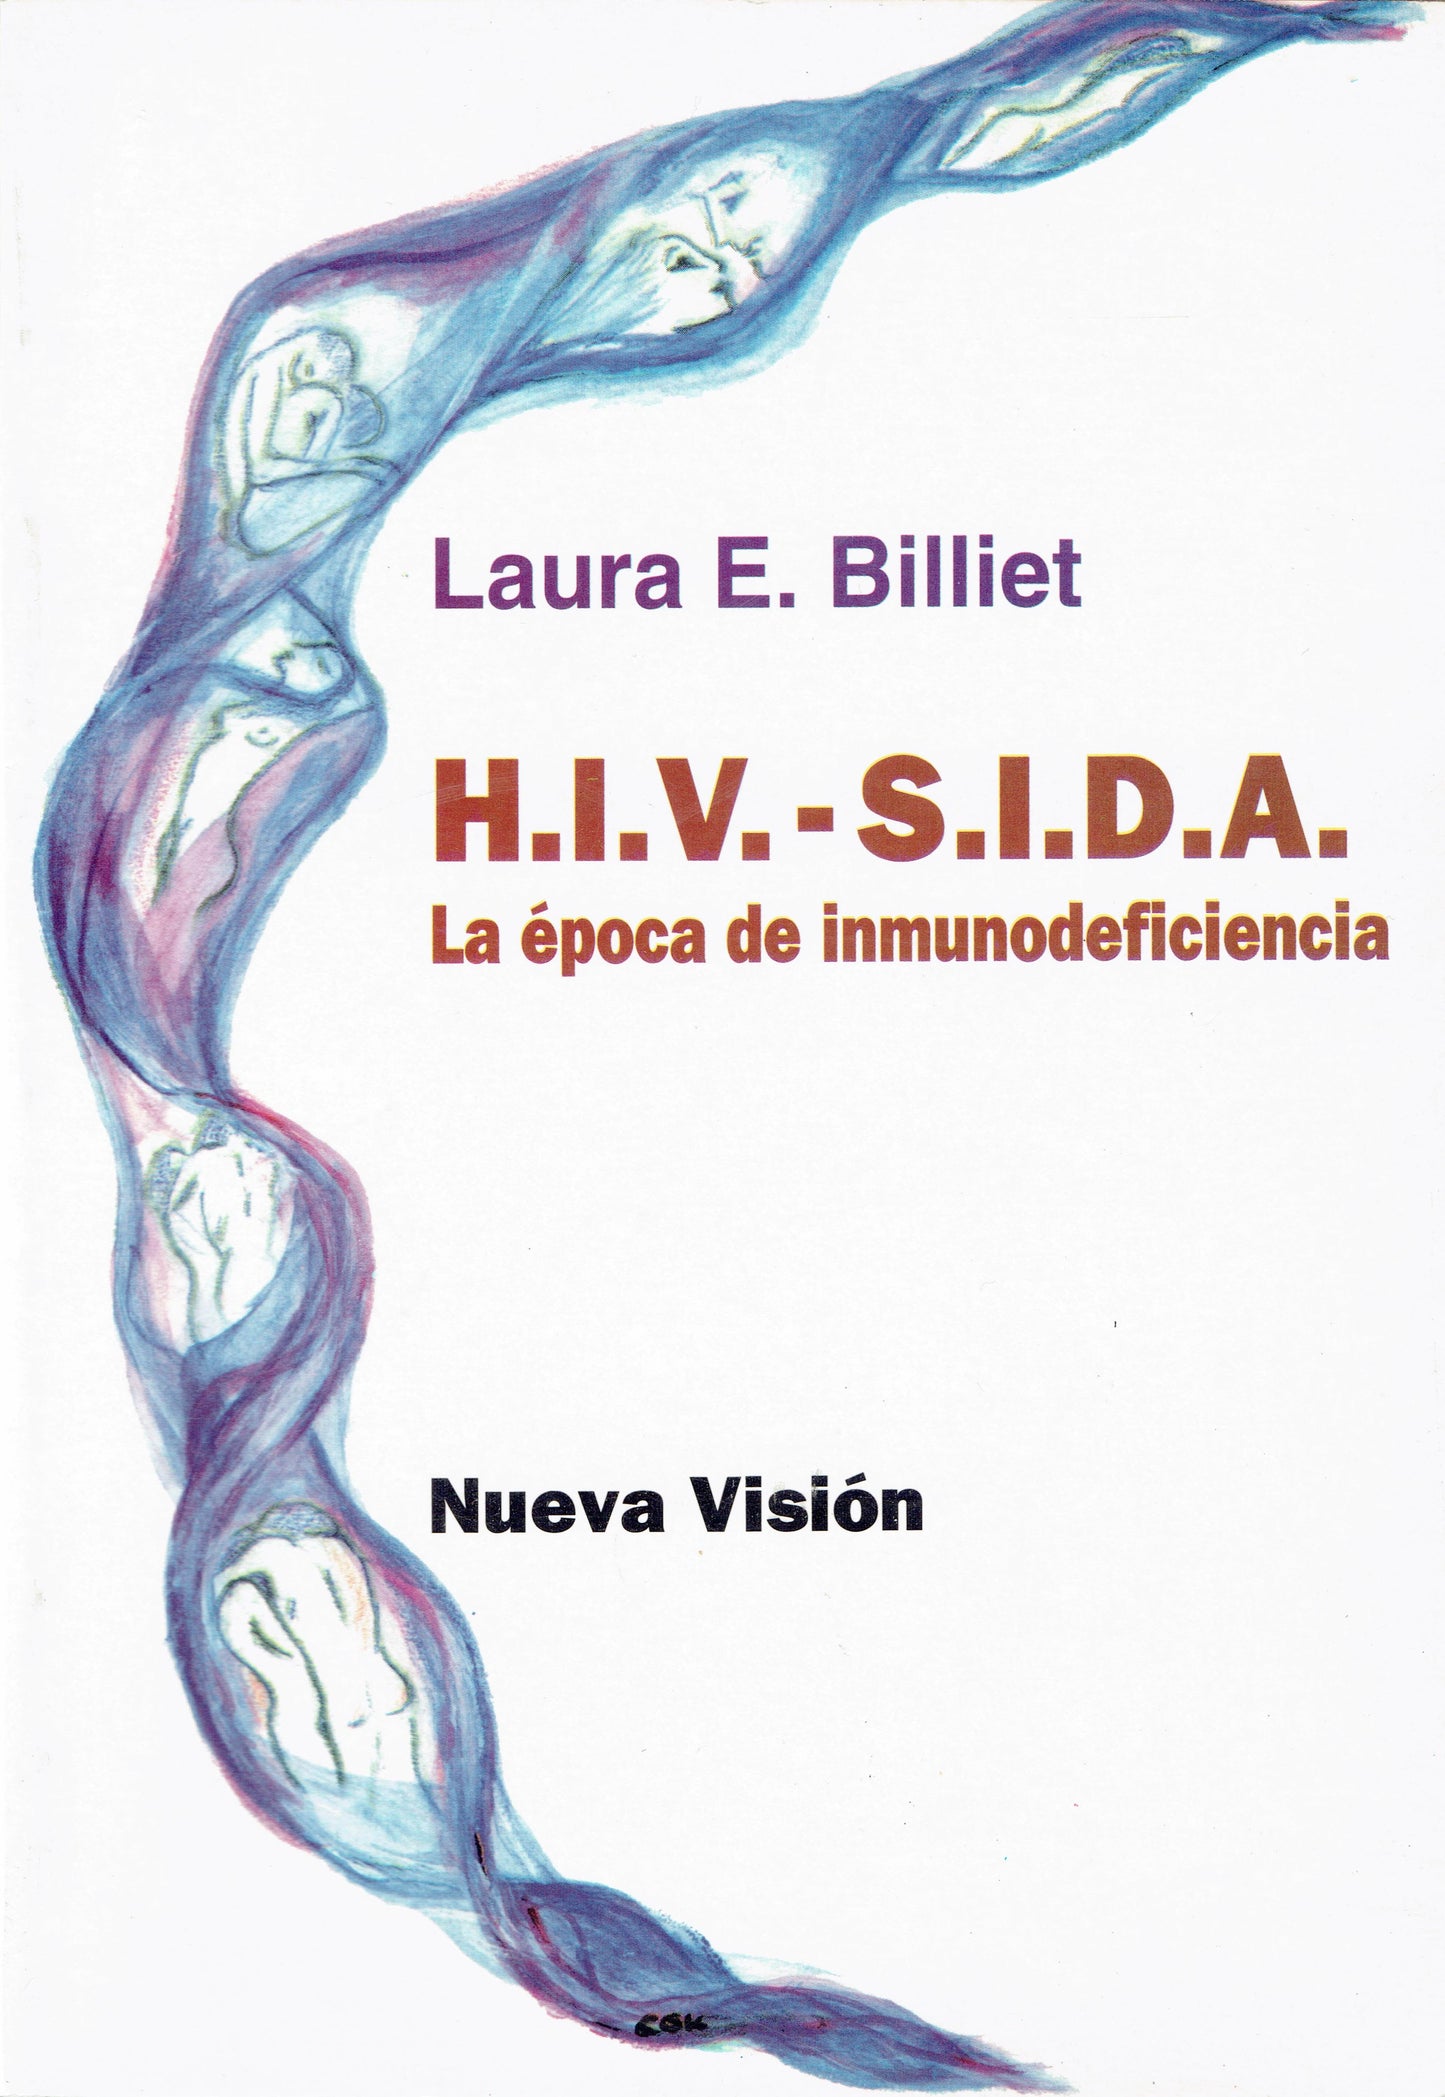 H.I.V. - S.I.D.A. - LA EPOCA DE INMUNODEFICIENCIA